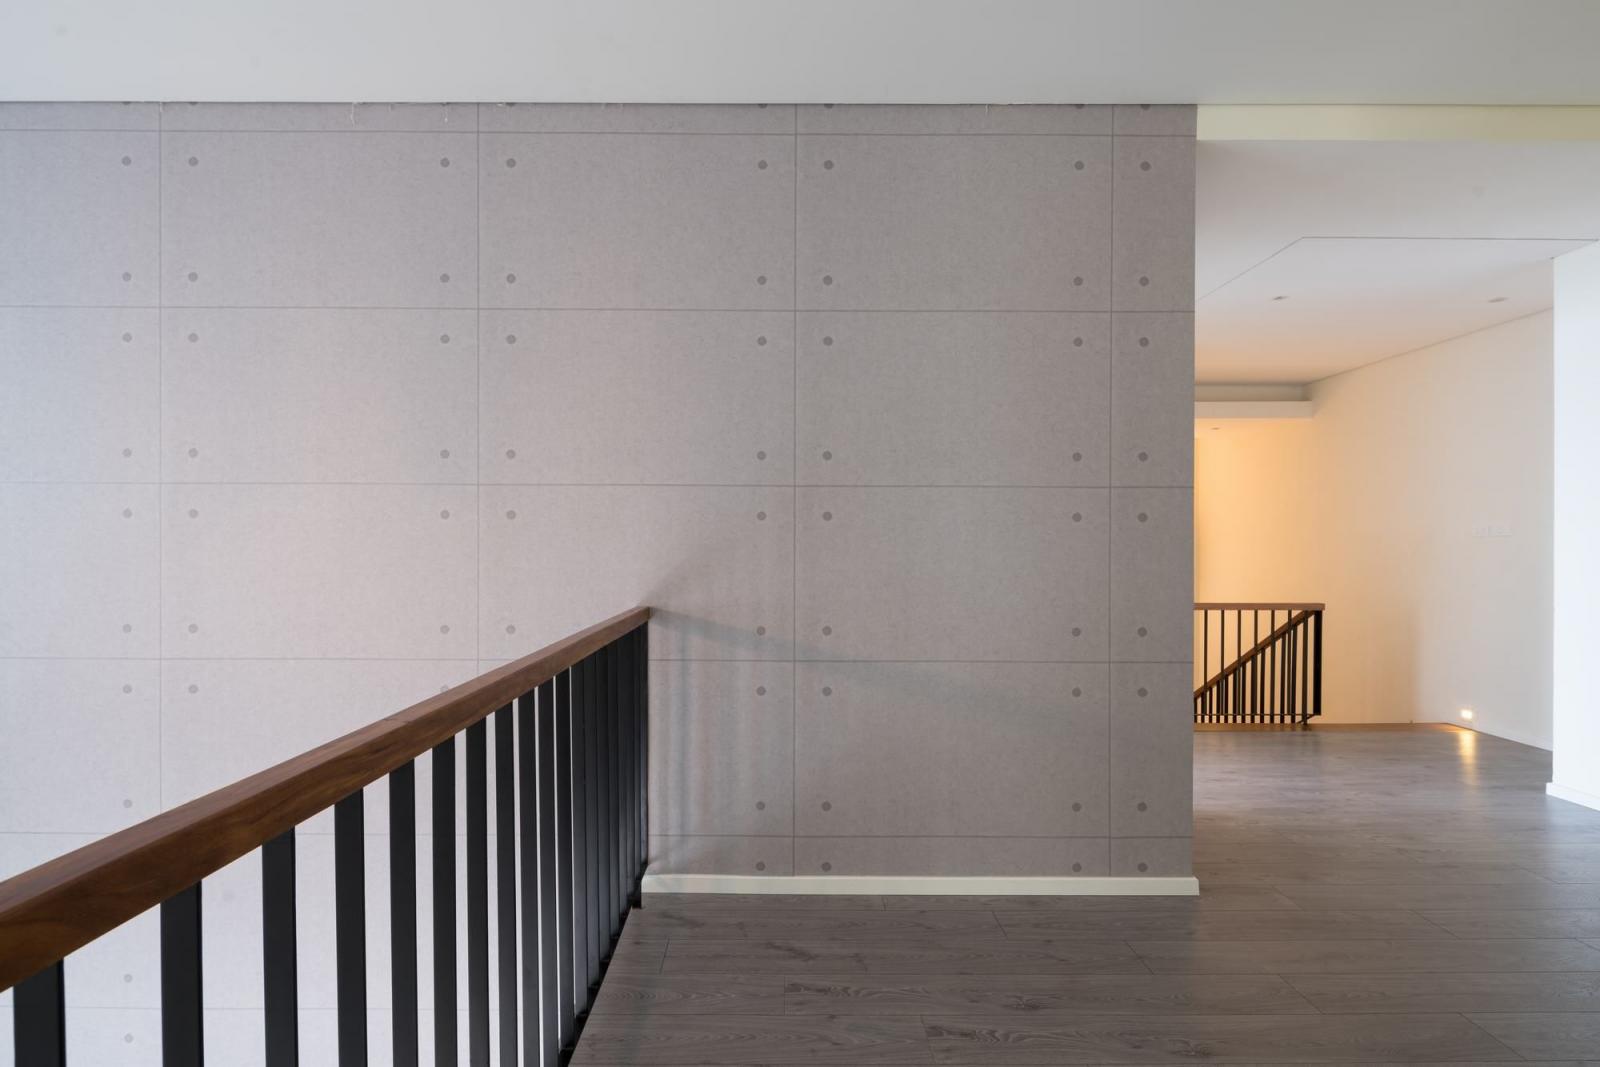 Hình ảnh cận cảnh hành lang trên tầng 2 lát gỗ màu xám hài hòa với tường và trần màu trắng